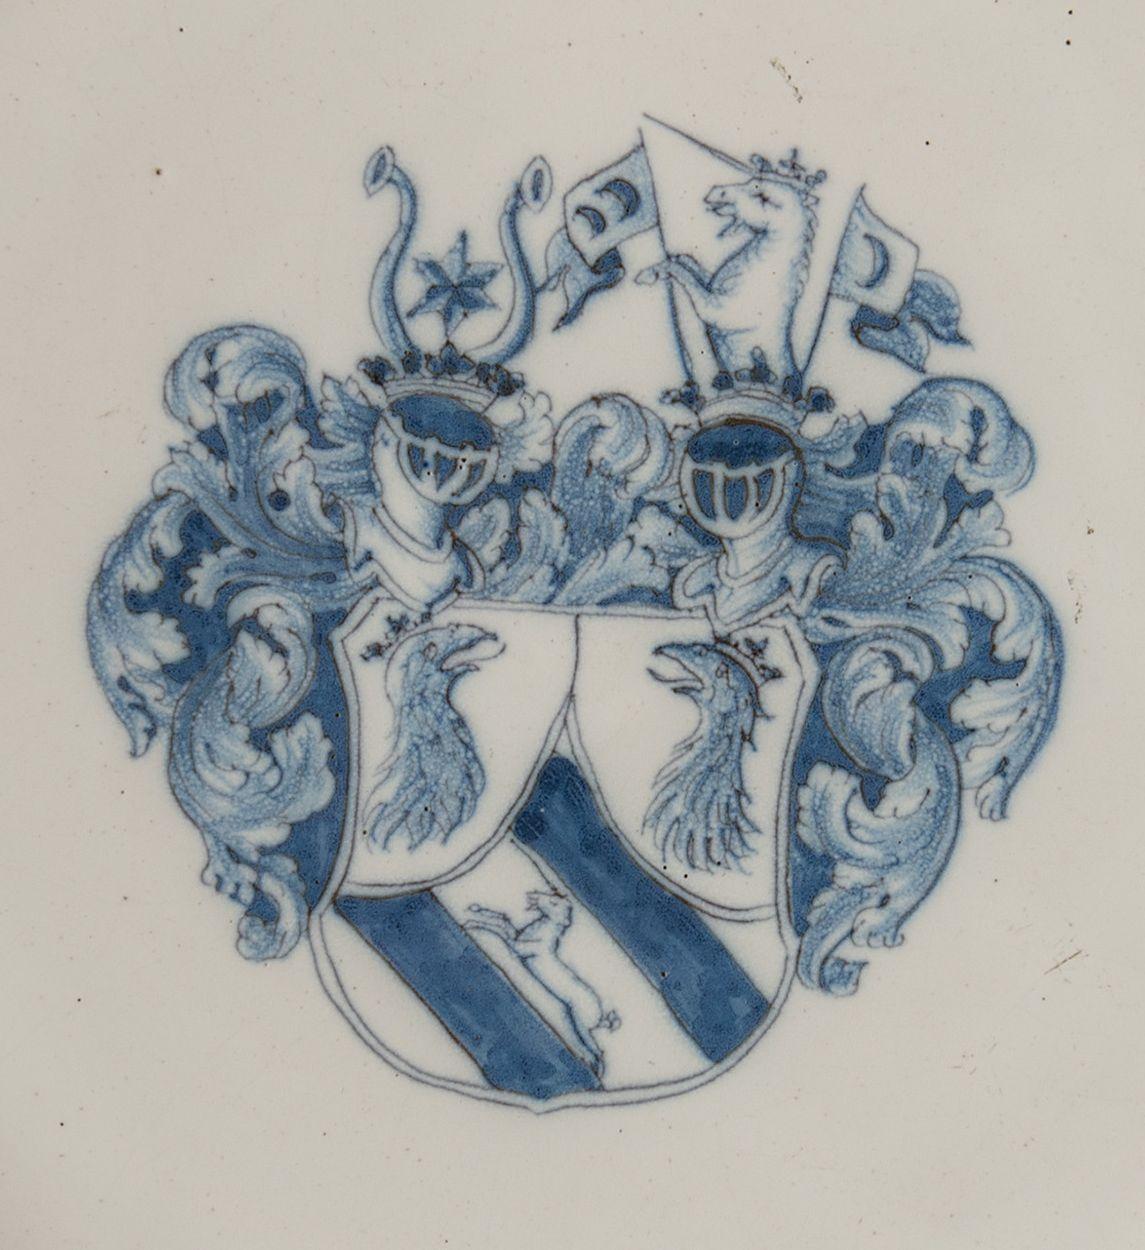 Blaues und weißes Wappenschild. Delft oder Haarlem, 1650-1680

Dieses große Ladegerät hat einen weit ausladenden Flansch und ist in der Mitte mit einem blauen Wappen verziert, das aus einem Schild mit zwei Helmen und einem Mantel besteht. Der